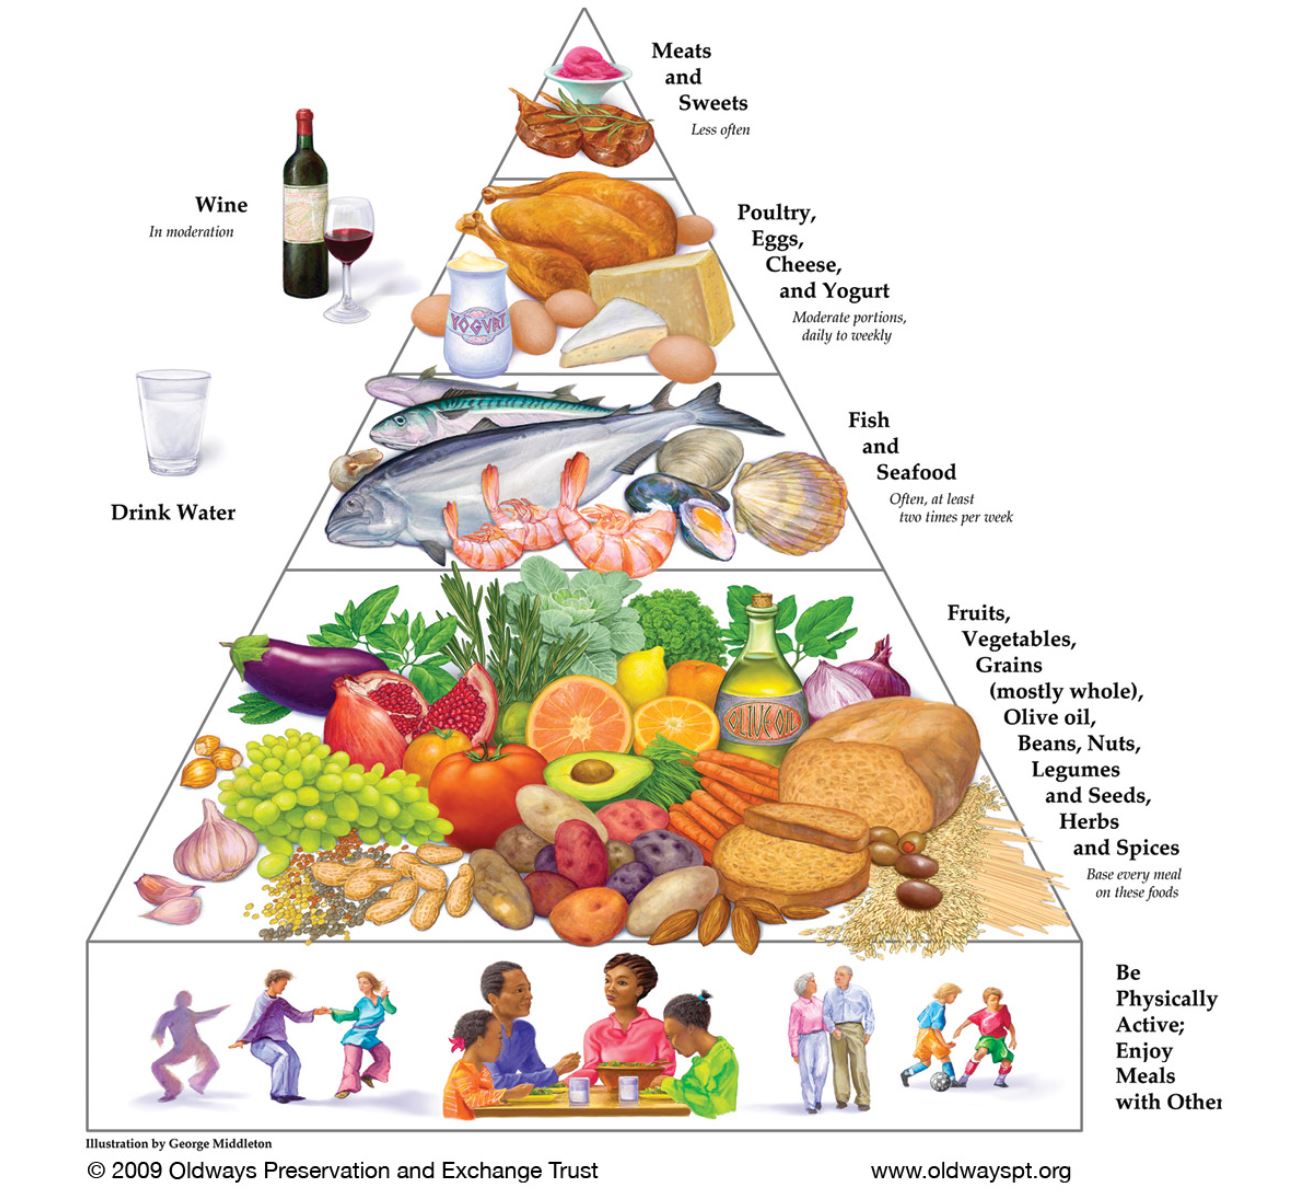 Mediterranean diet guide